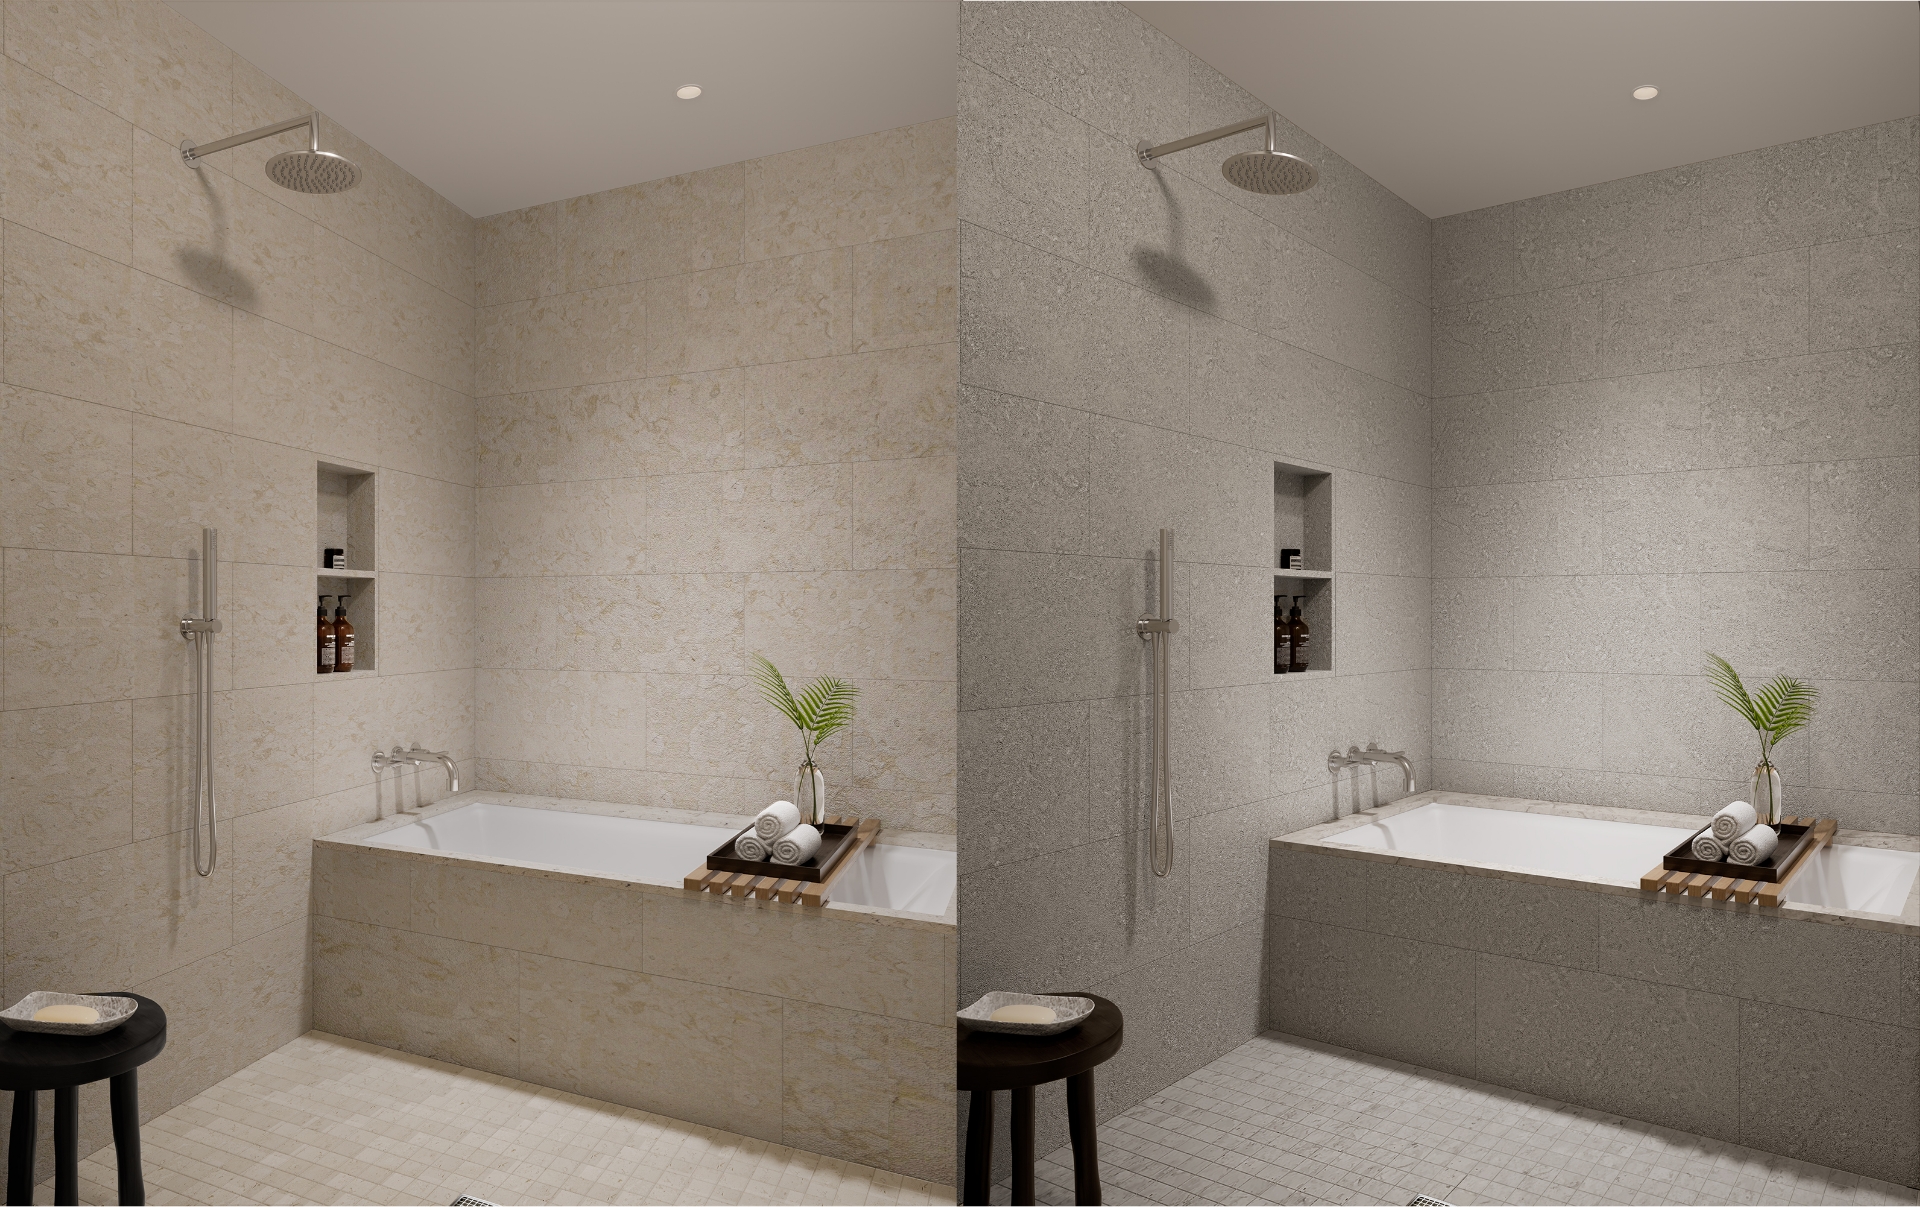 浅色和深色方案比较中的淋浴和浴缸组合的并排视图。